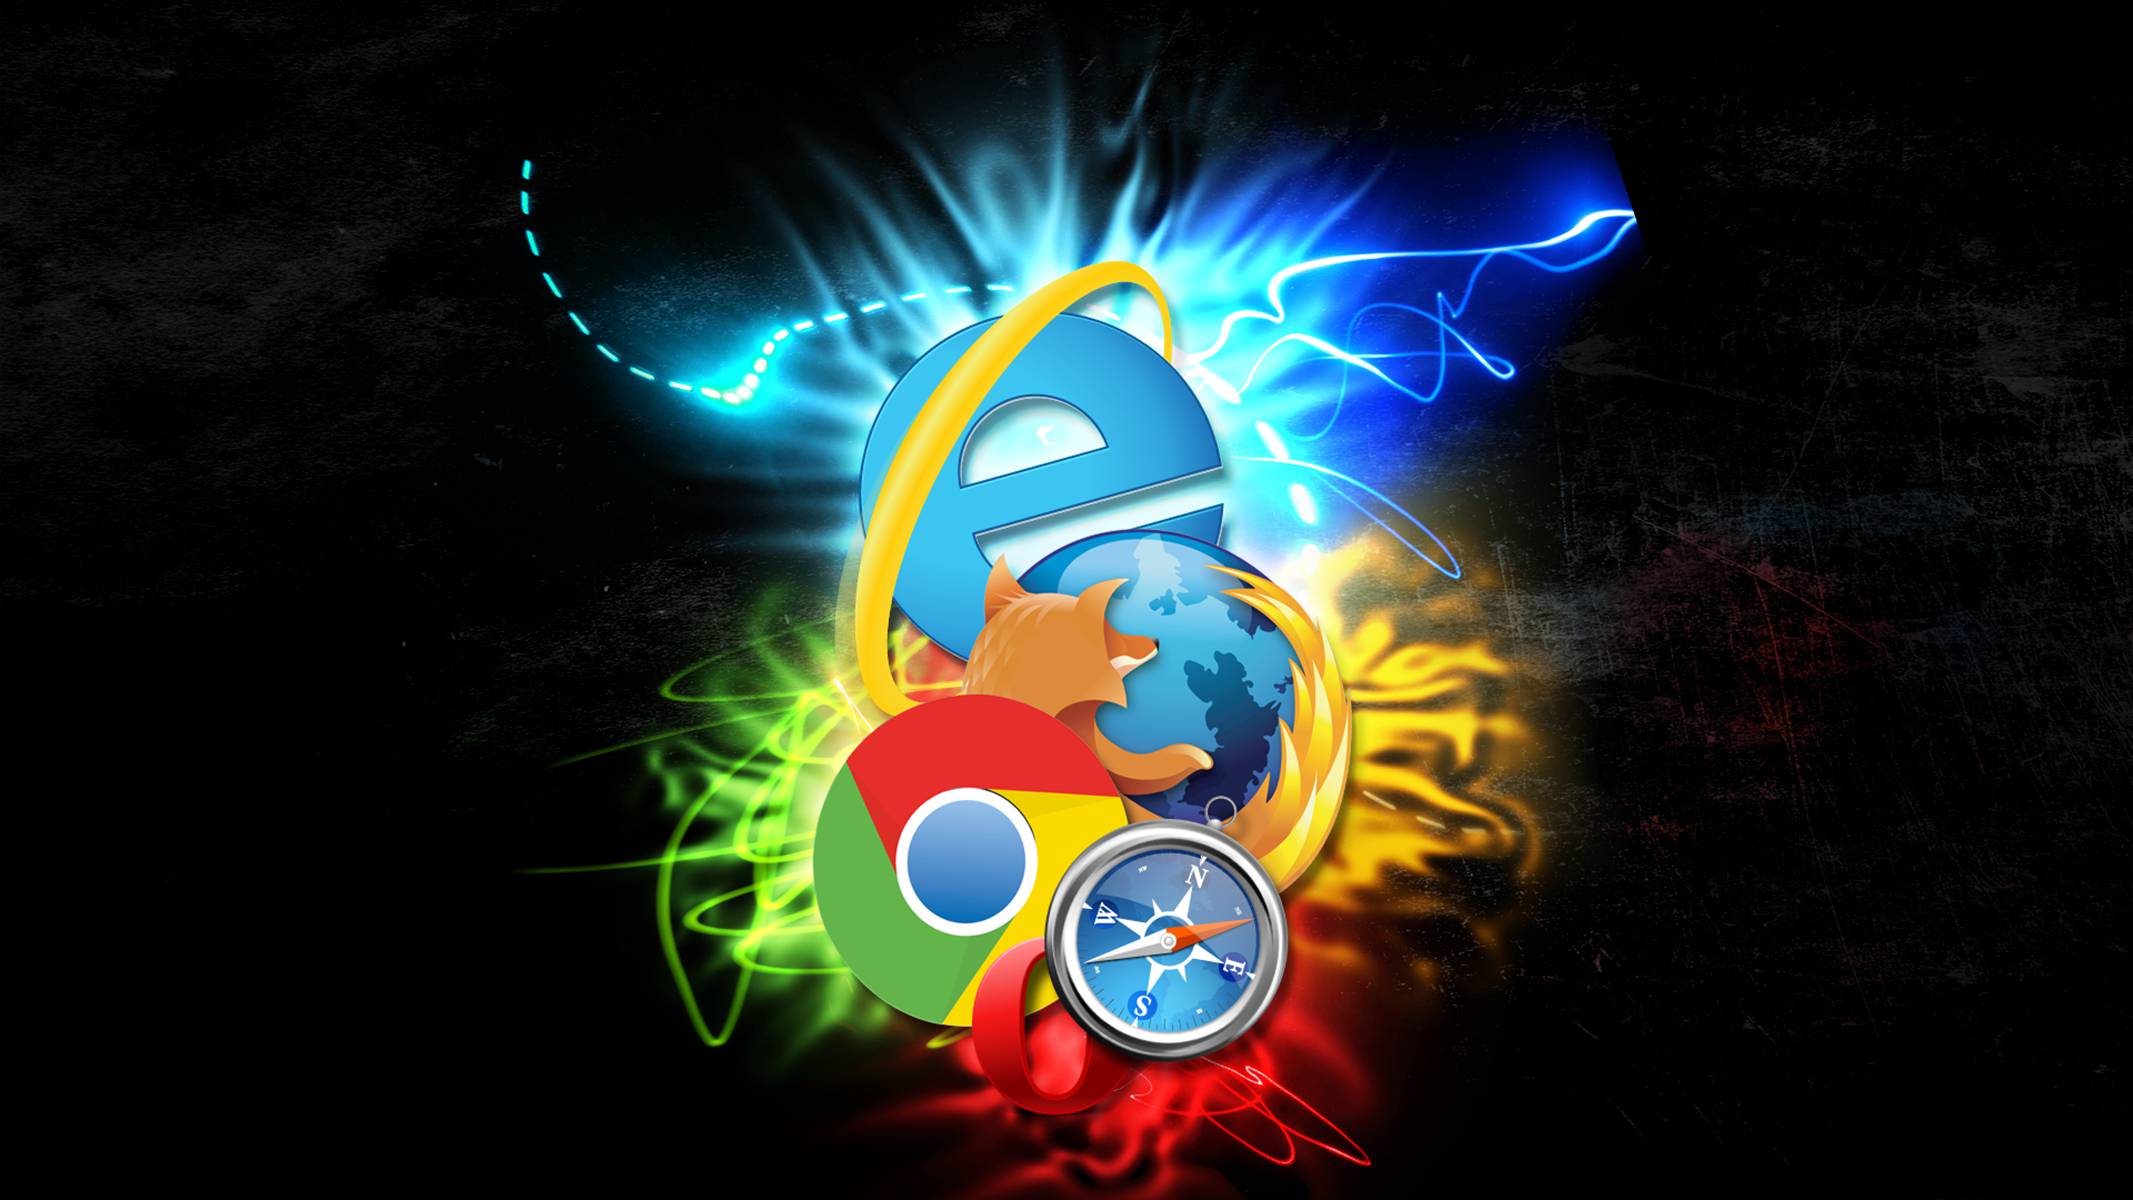 Тема инт. Интернет браузеры. Изображение для браузера. Логотипы интернет браузеров. Фон для браузера.